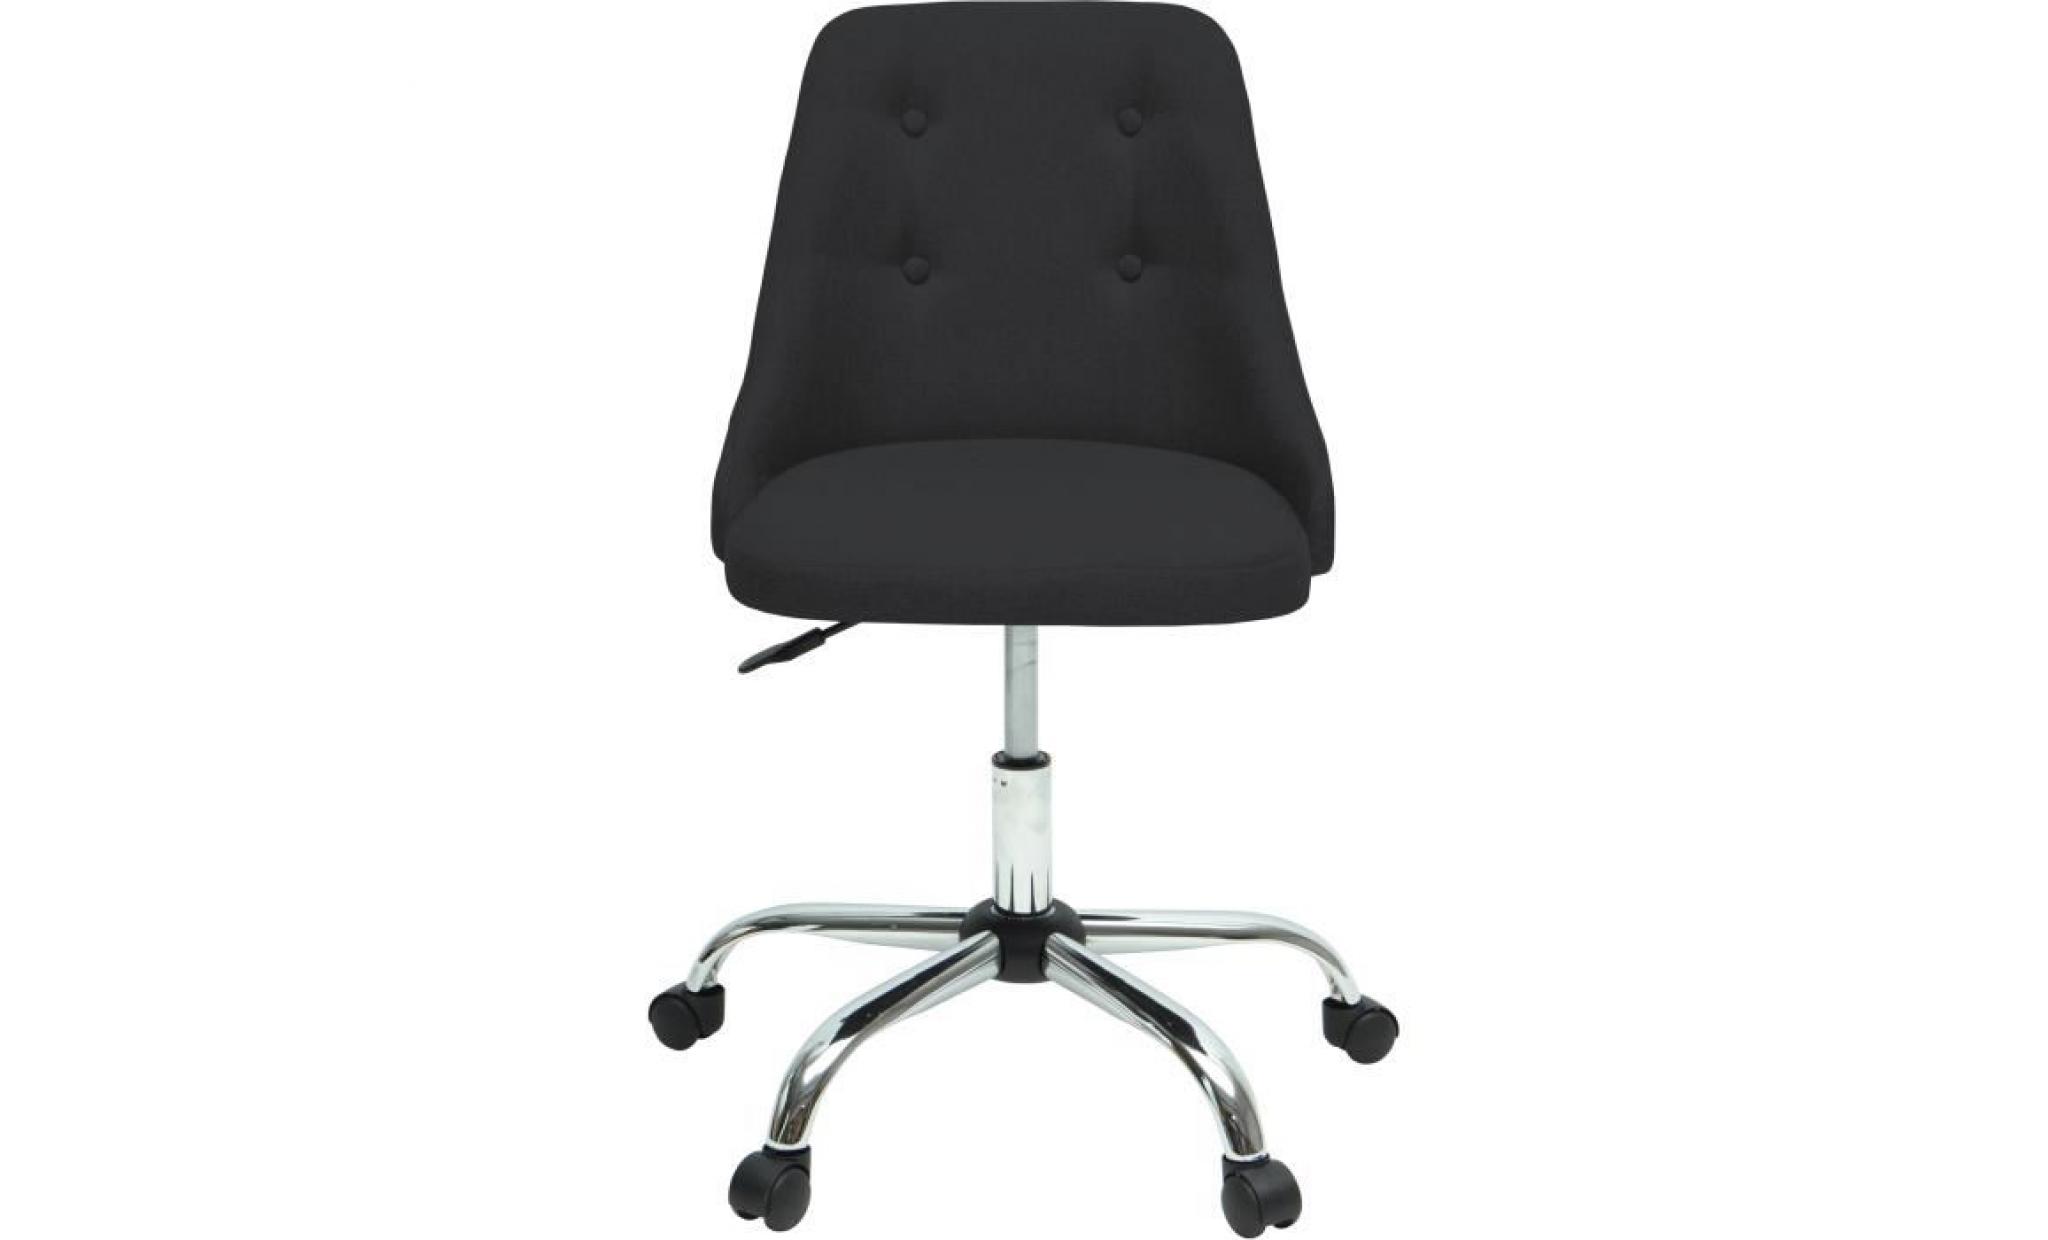 sigma chaise de bureau   simili et tissu noir   style contemporain   l 45,5 x p 47,5 cm pas cher